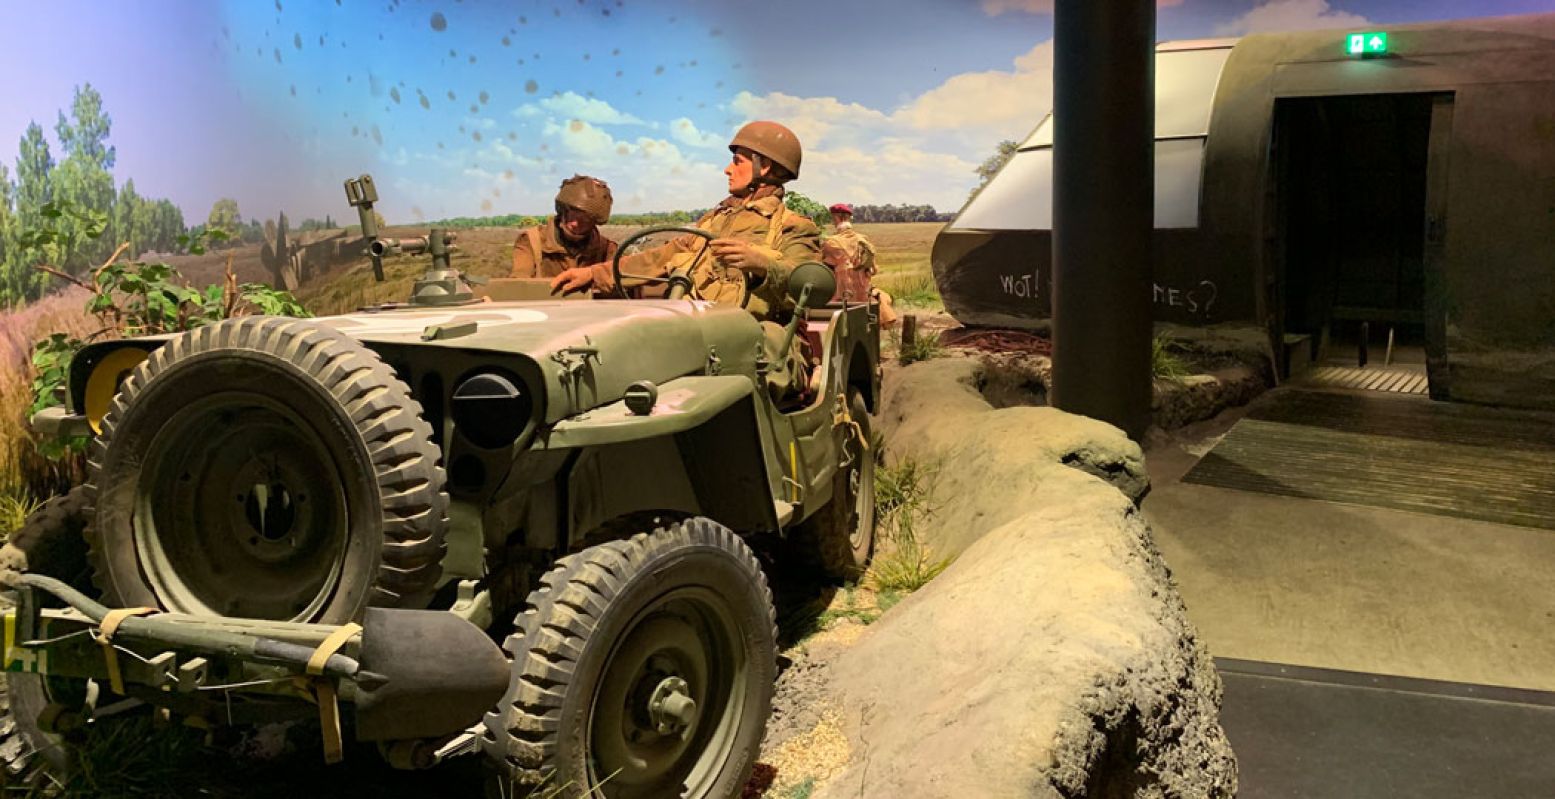 In de Airborne Experience bevind je je midden op het slagveld van de Slag om Arnhem. Foto: Redactie DagjeWeg.NL